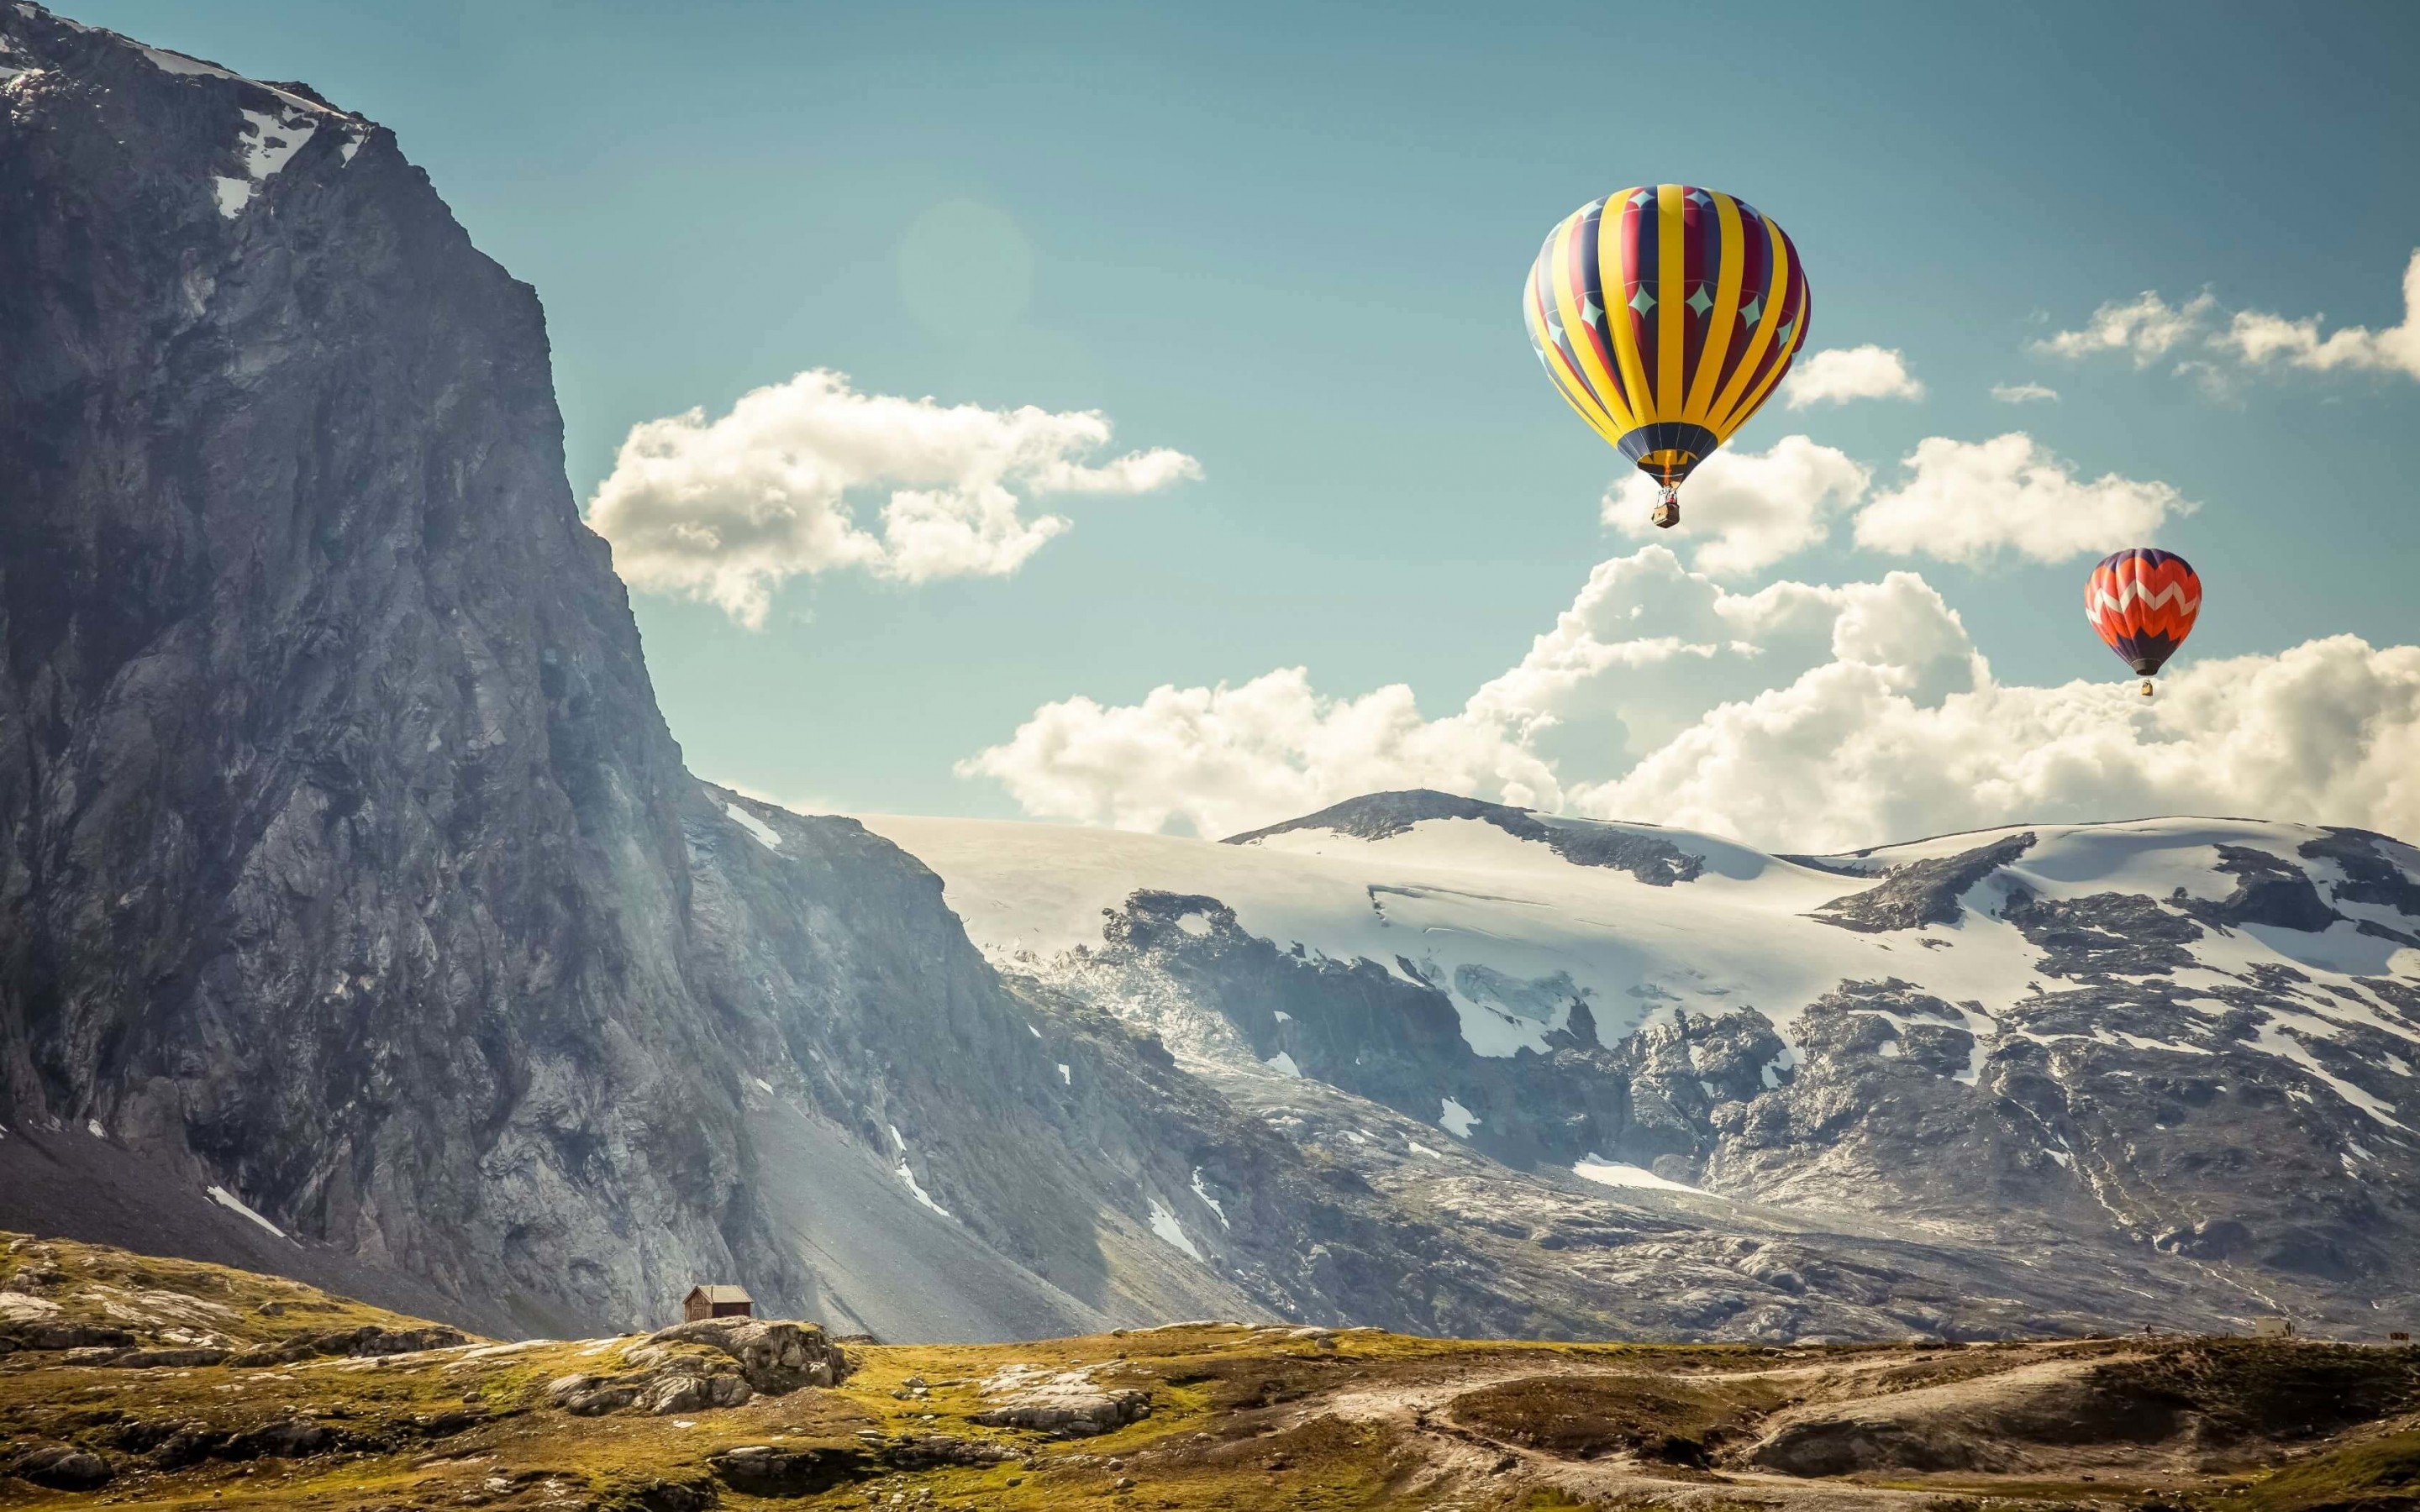 Hot Air Balloon Over the Mountain Wallpaper for Desktop 2880x1800